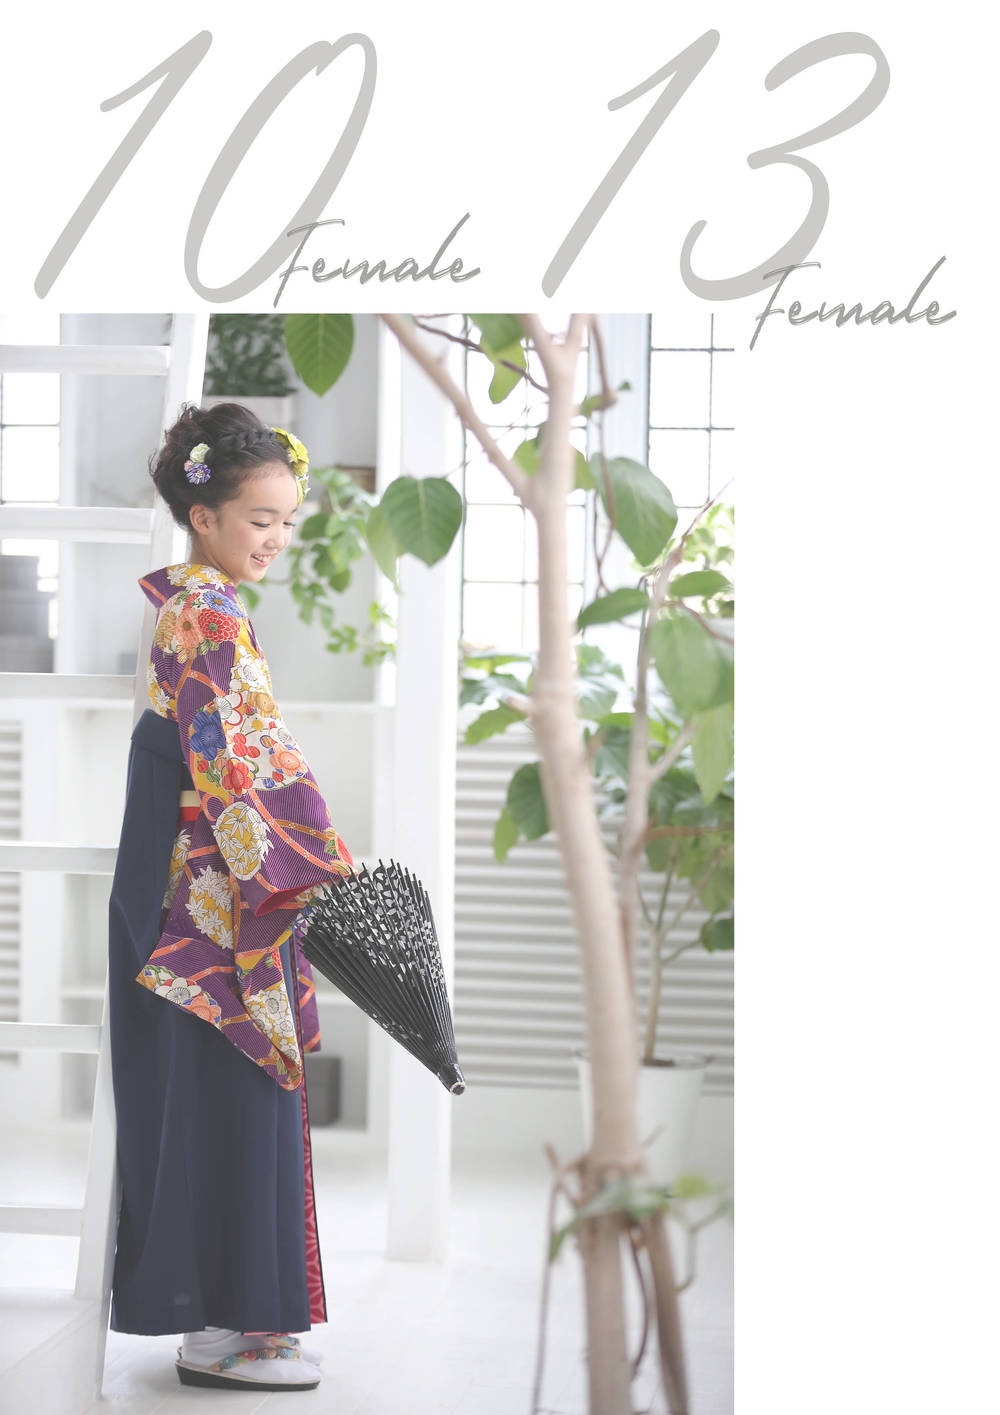 Kimono 10歳 13歳女の子 名古屋店 子供から家族まで自然でおしゃれに残す人生の写真館 ライフスタジオ